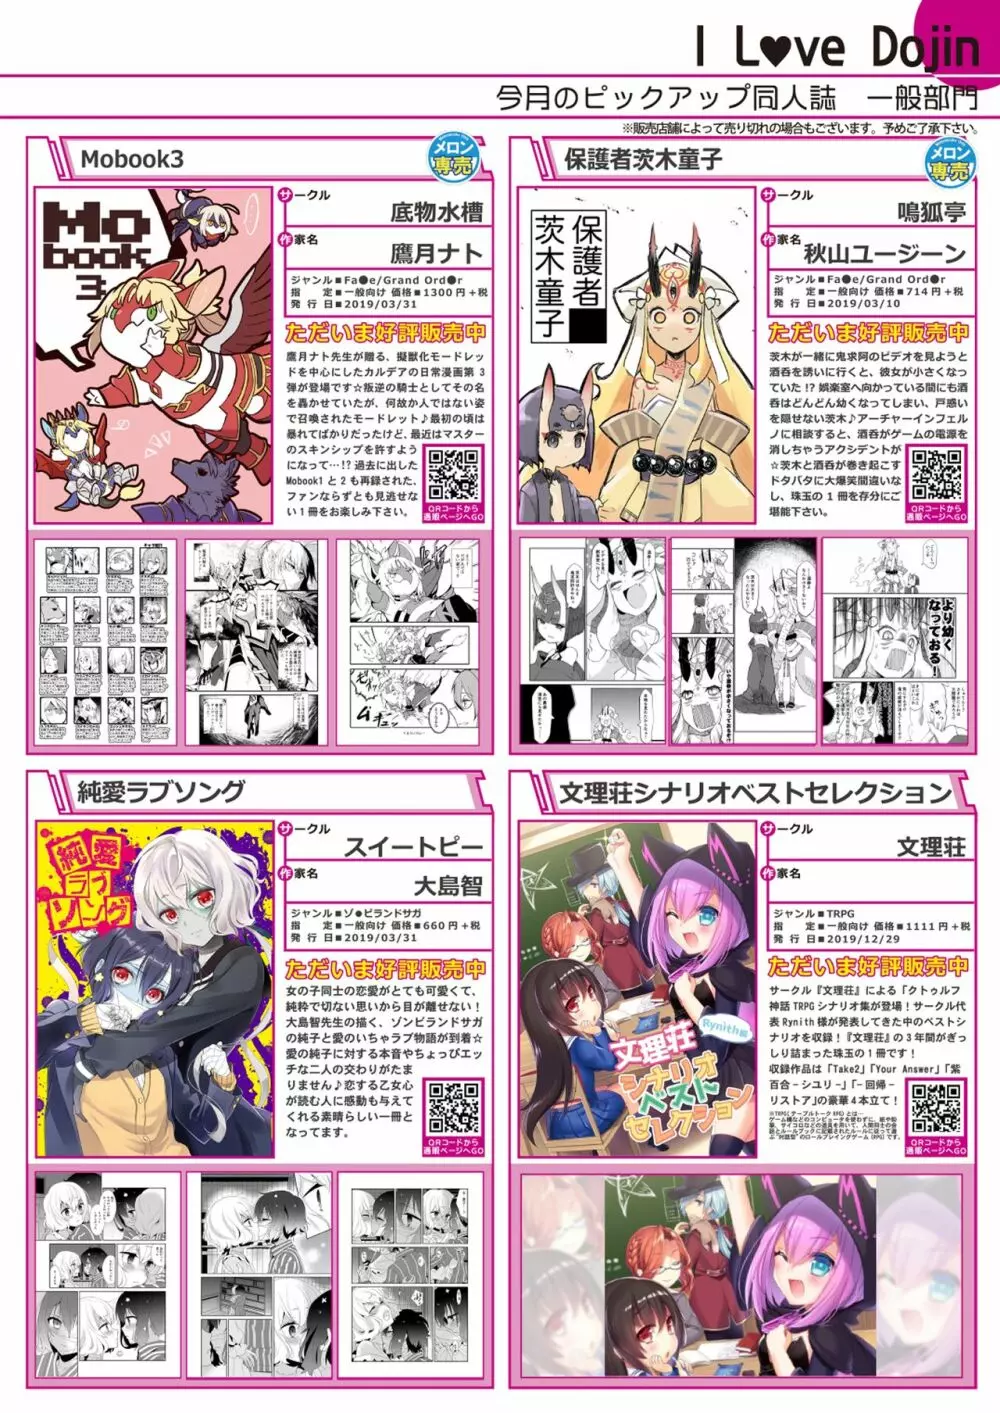 月刊うりぼうざっか店 2019年5月10日発行号 7ページ